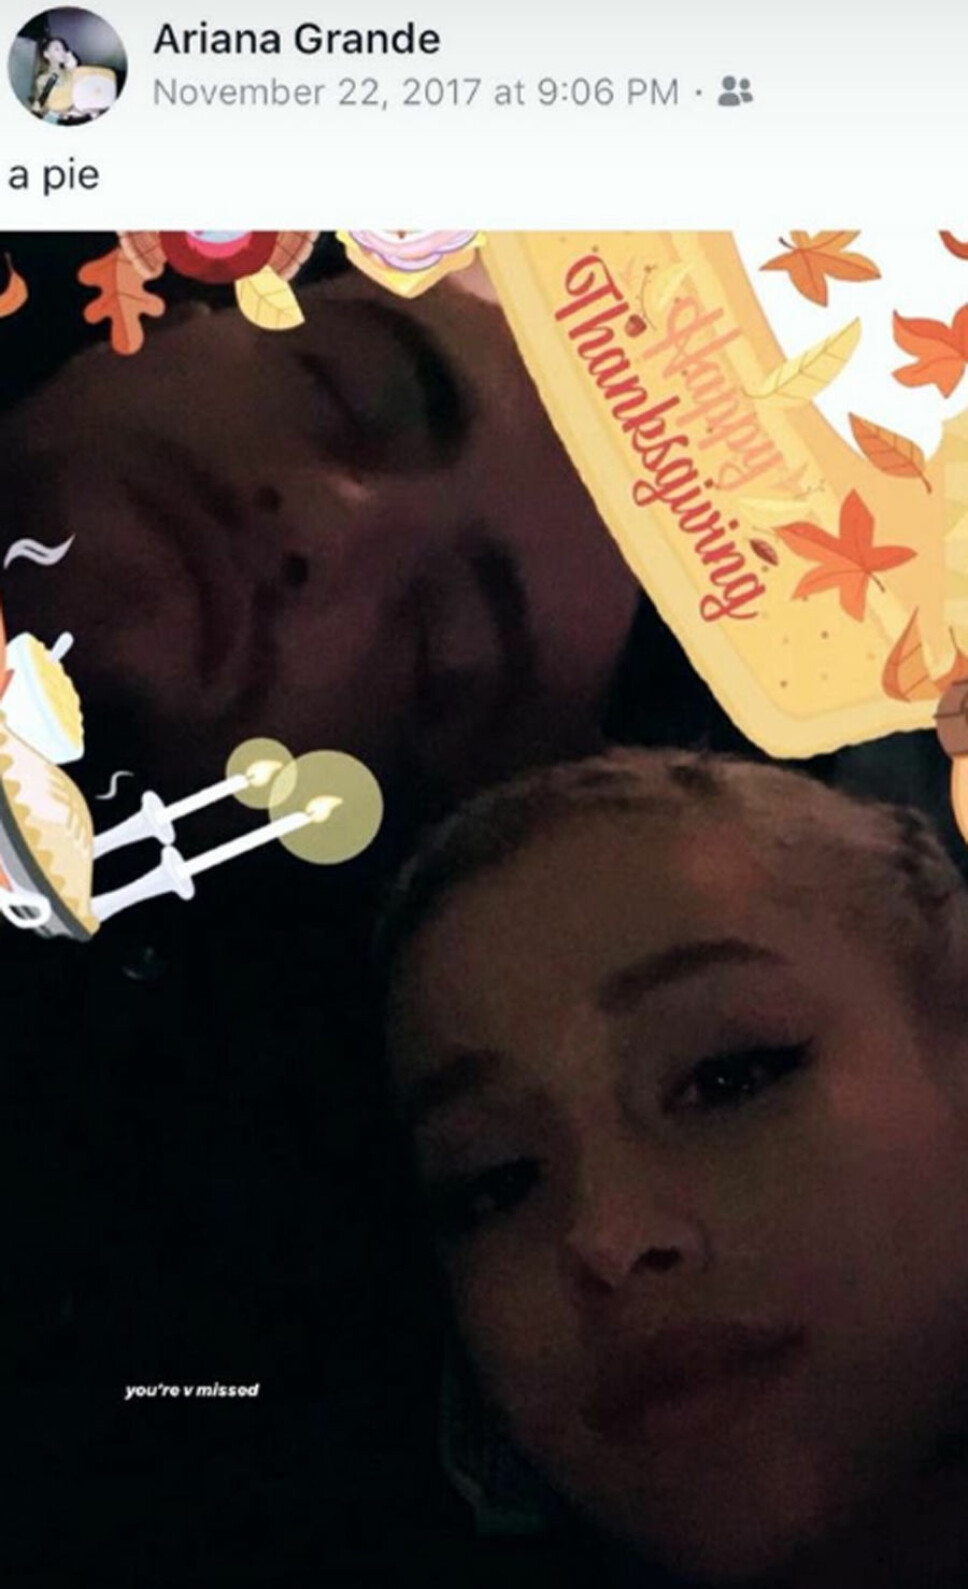 TILBRAKTE THANKGSGIVING SAMMEN: Avdøde MacMiller og Ariana Grande tilbrakte fjorårets thanksgiving-feiring sammen. Ariana delte denne oppdateringen på Instagram story, ett år senere.